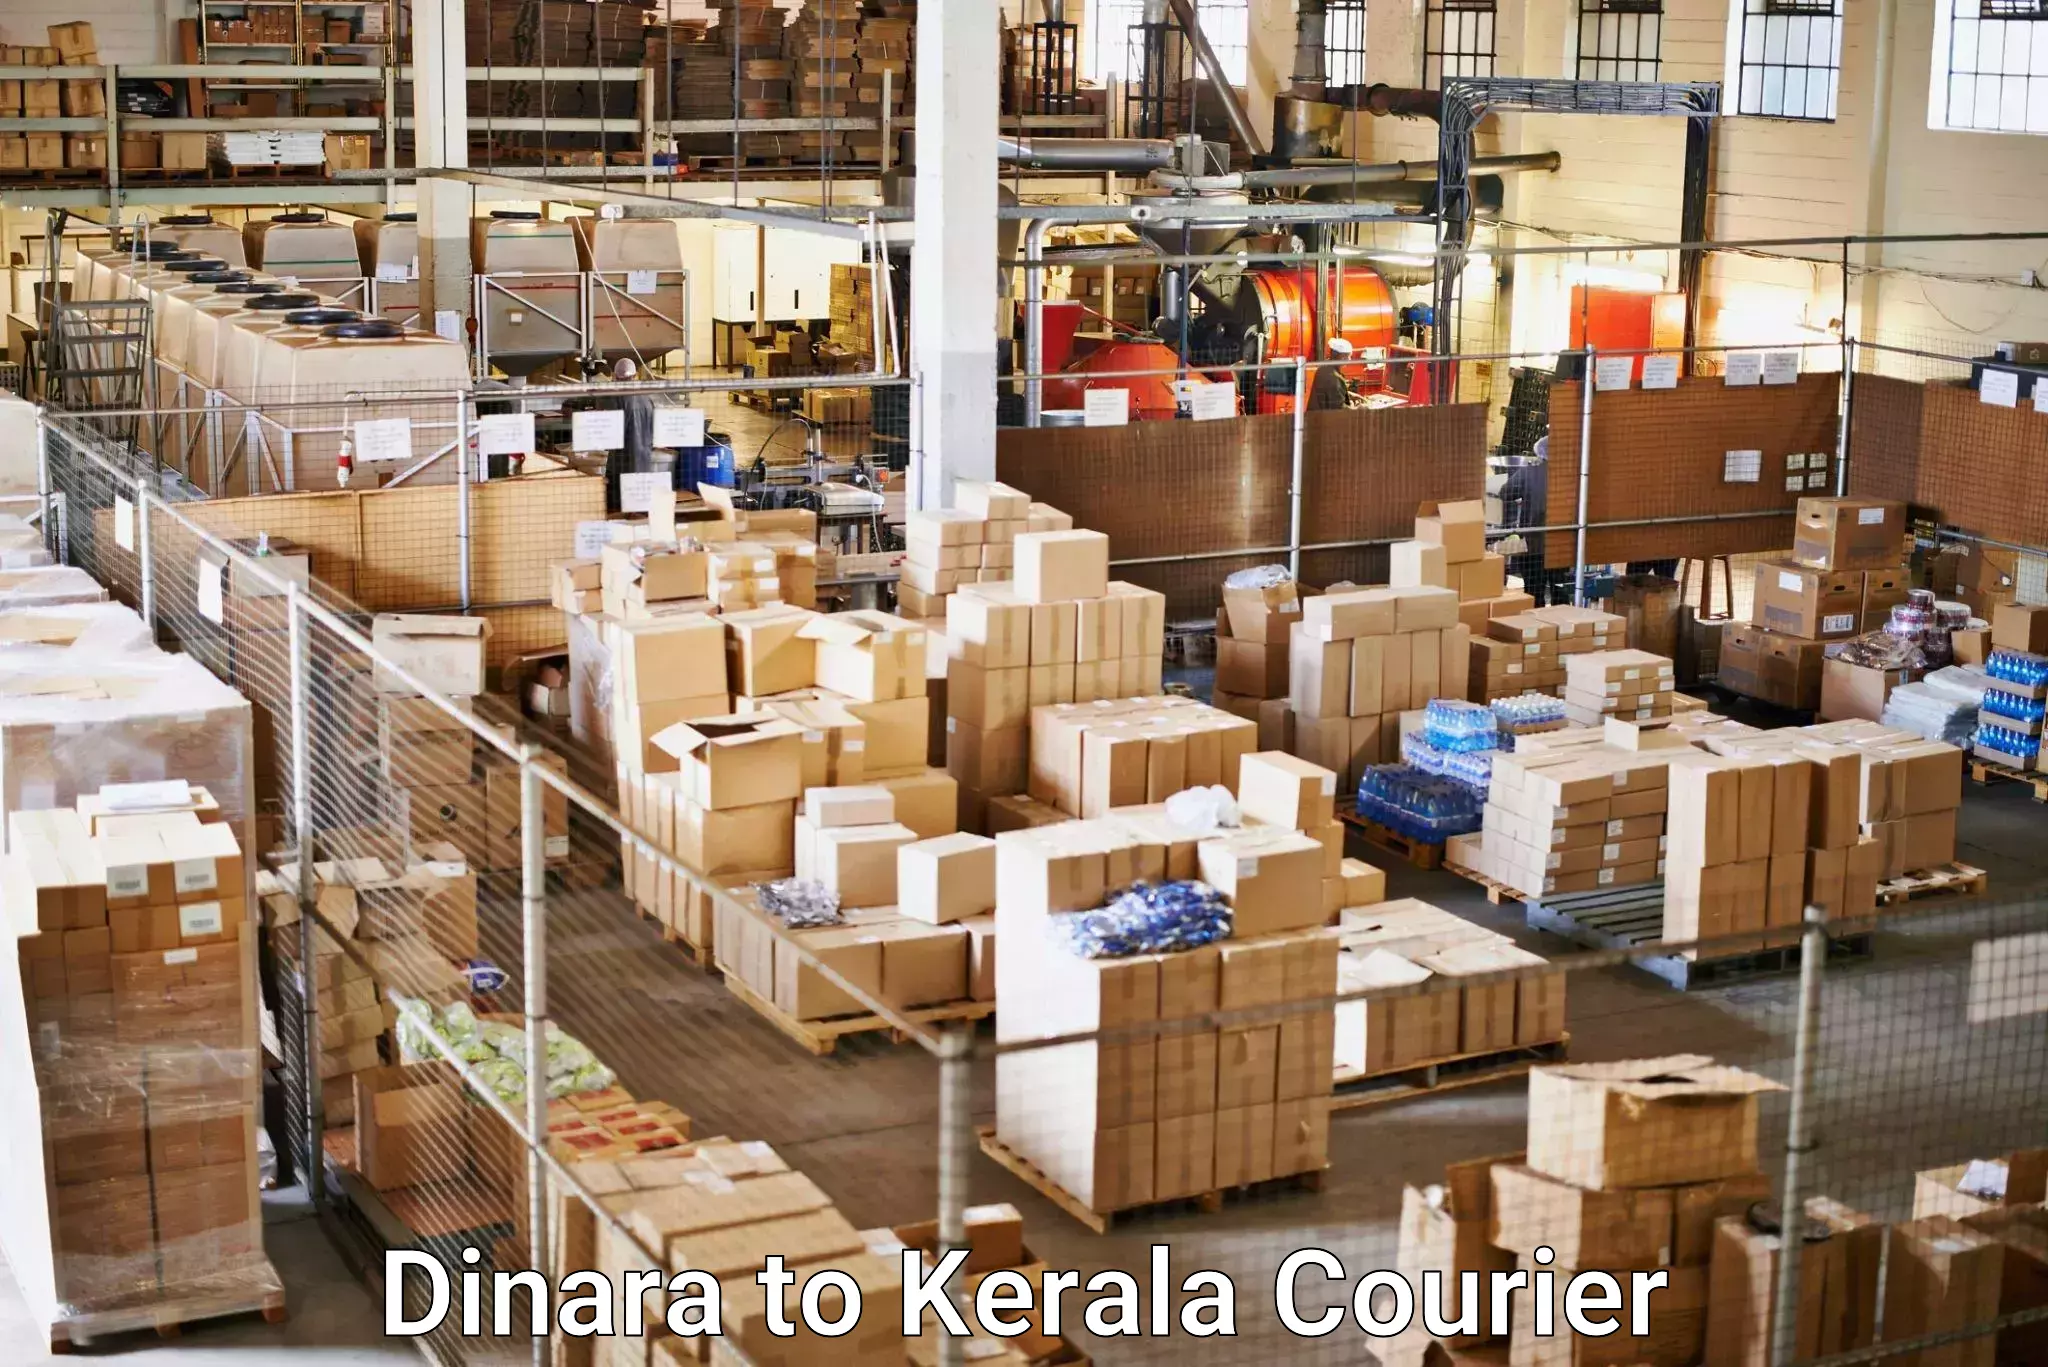 Business shipping needs Dinara to Palakkad